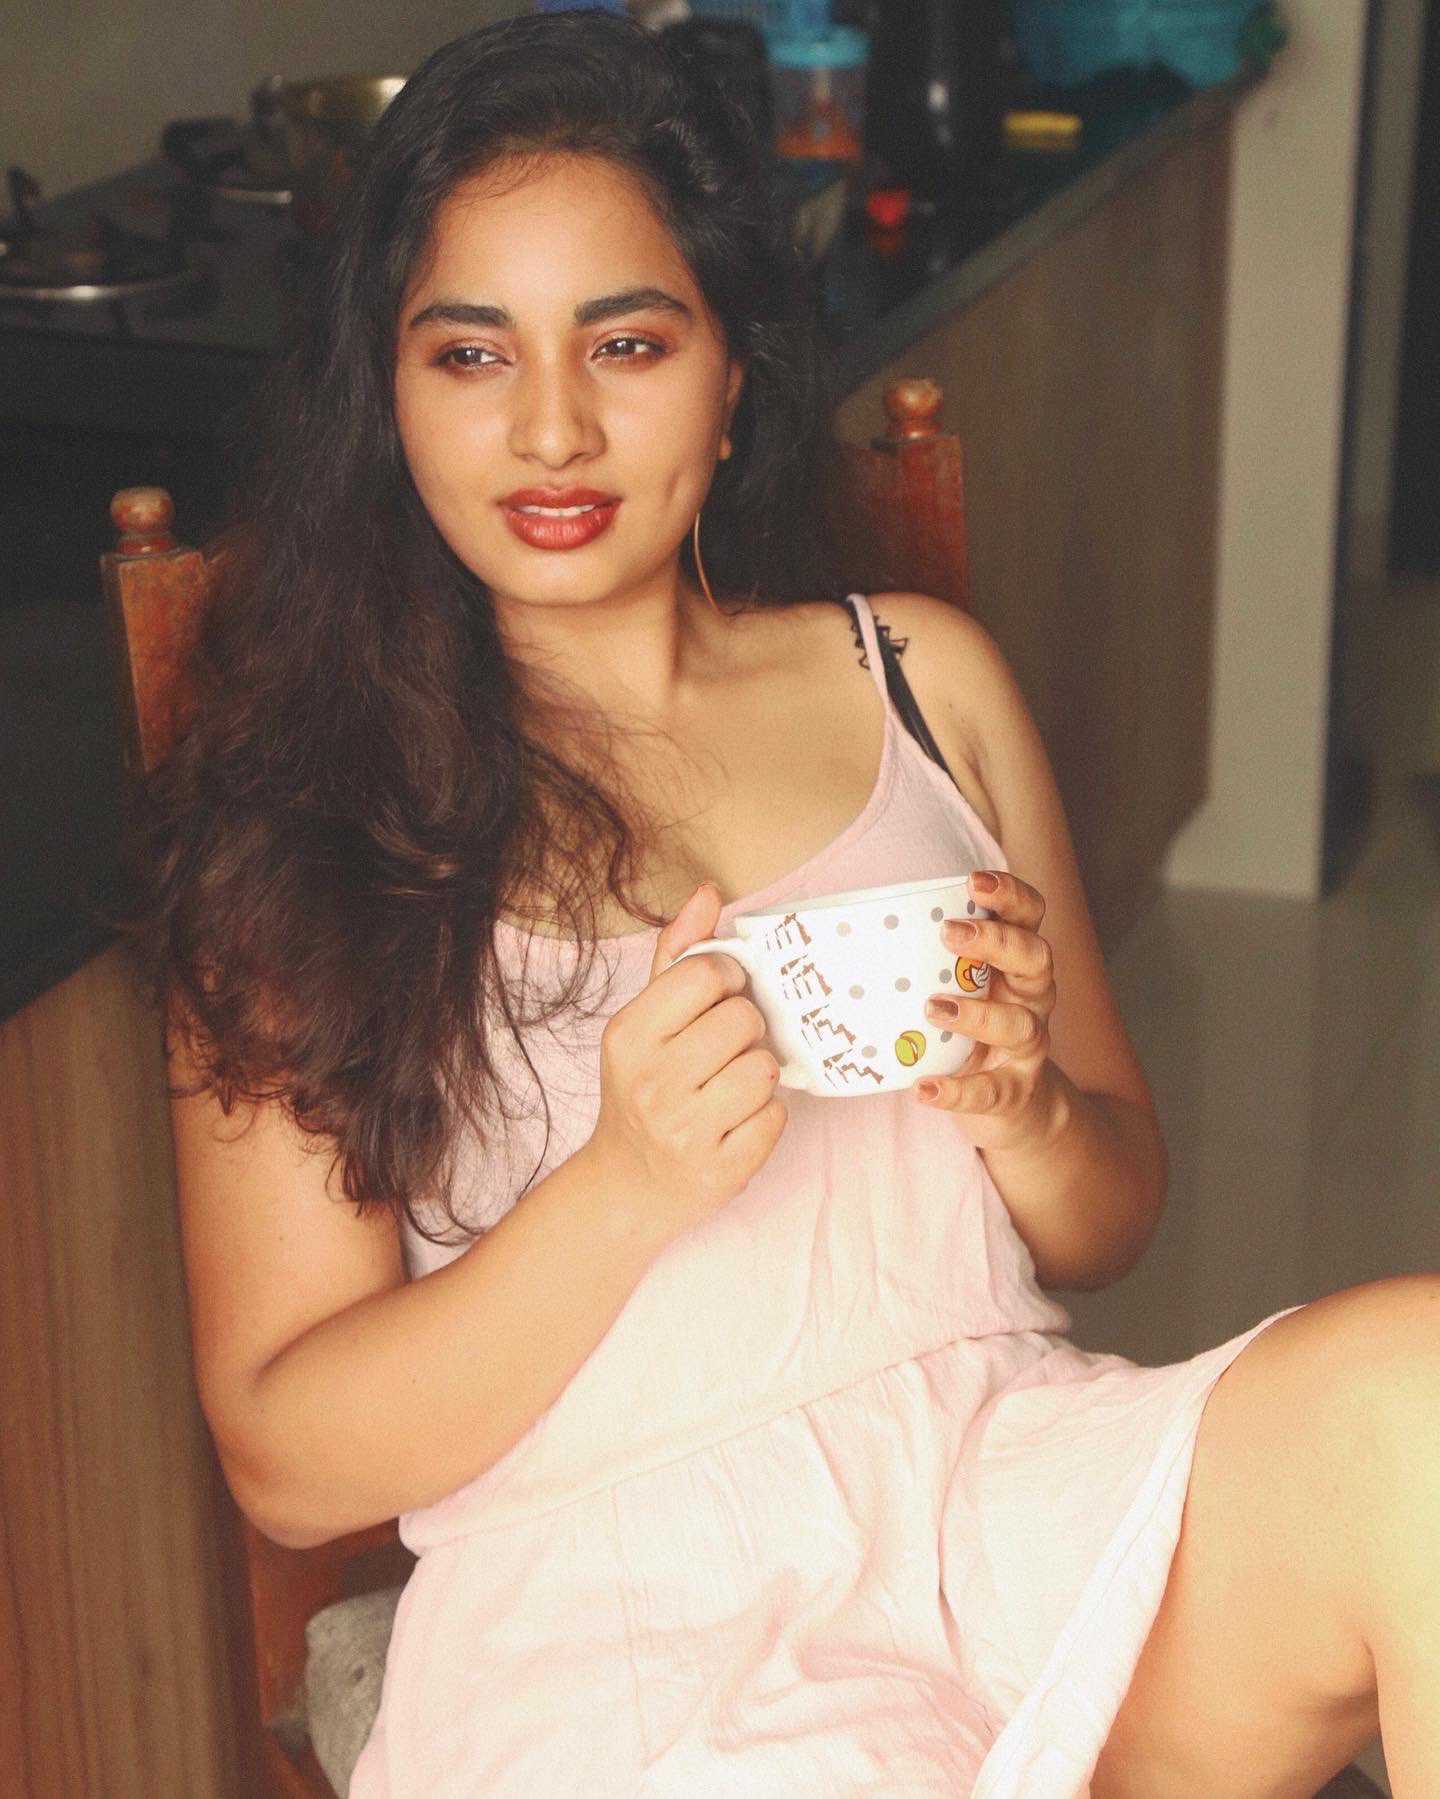 Srushti dange hot pink slip photoshoot getting viral